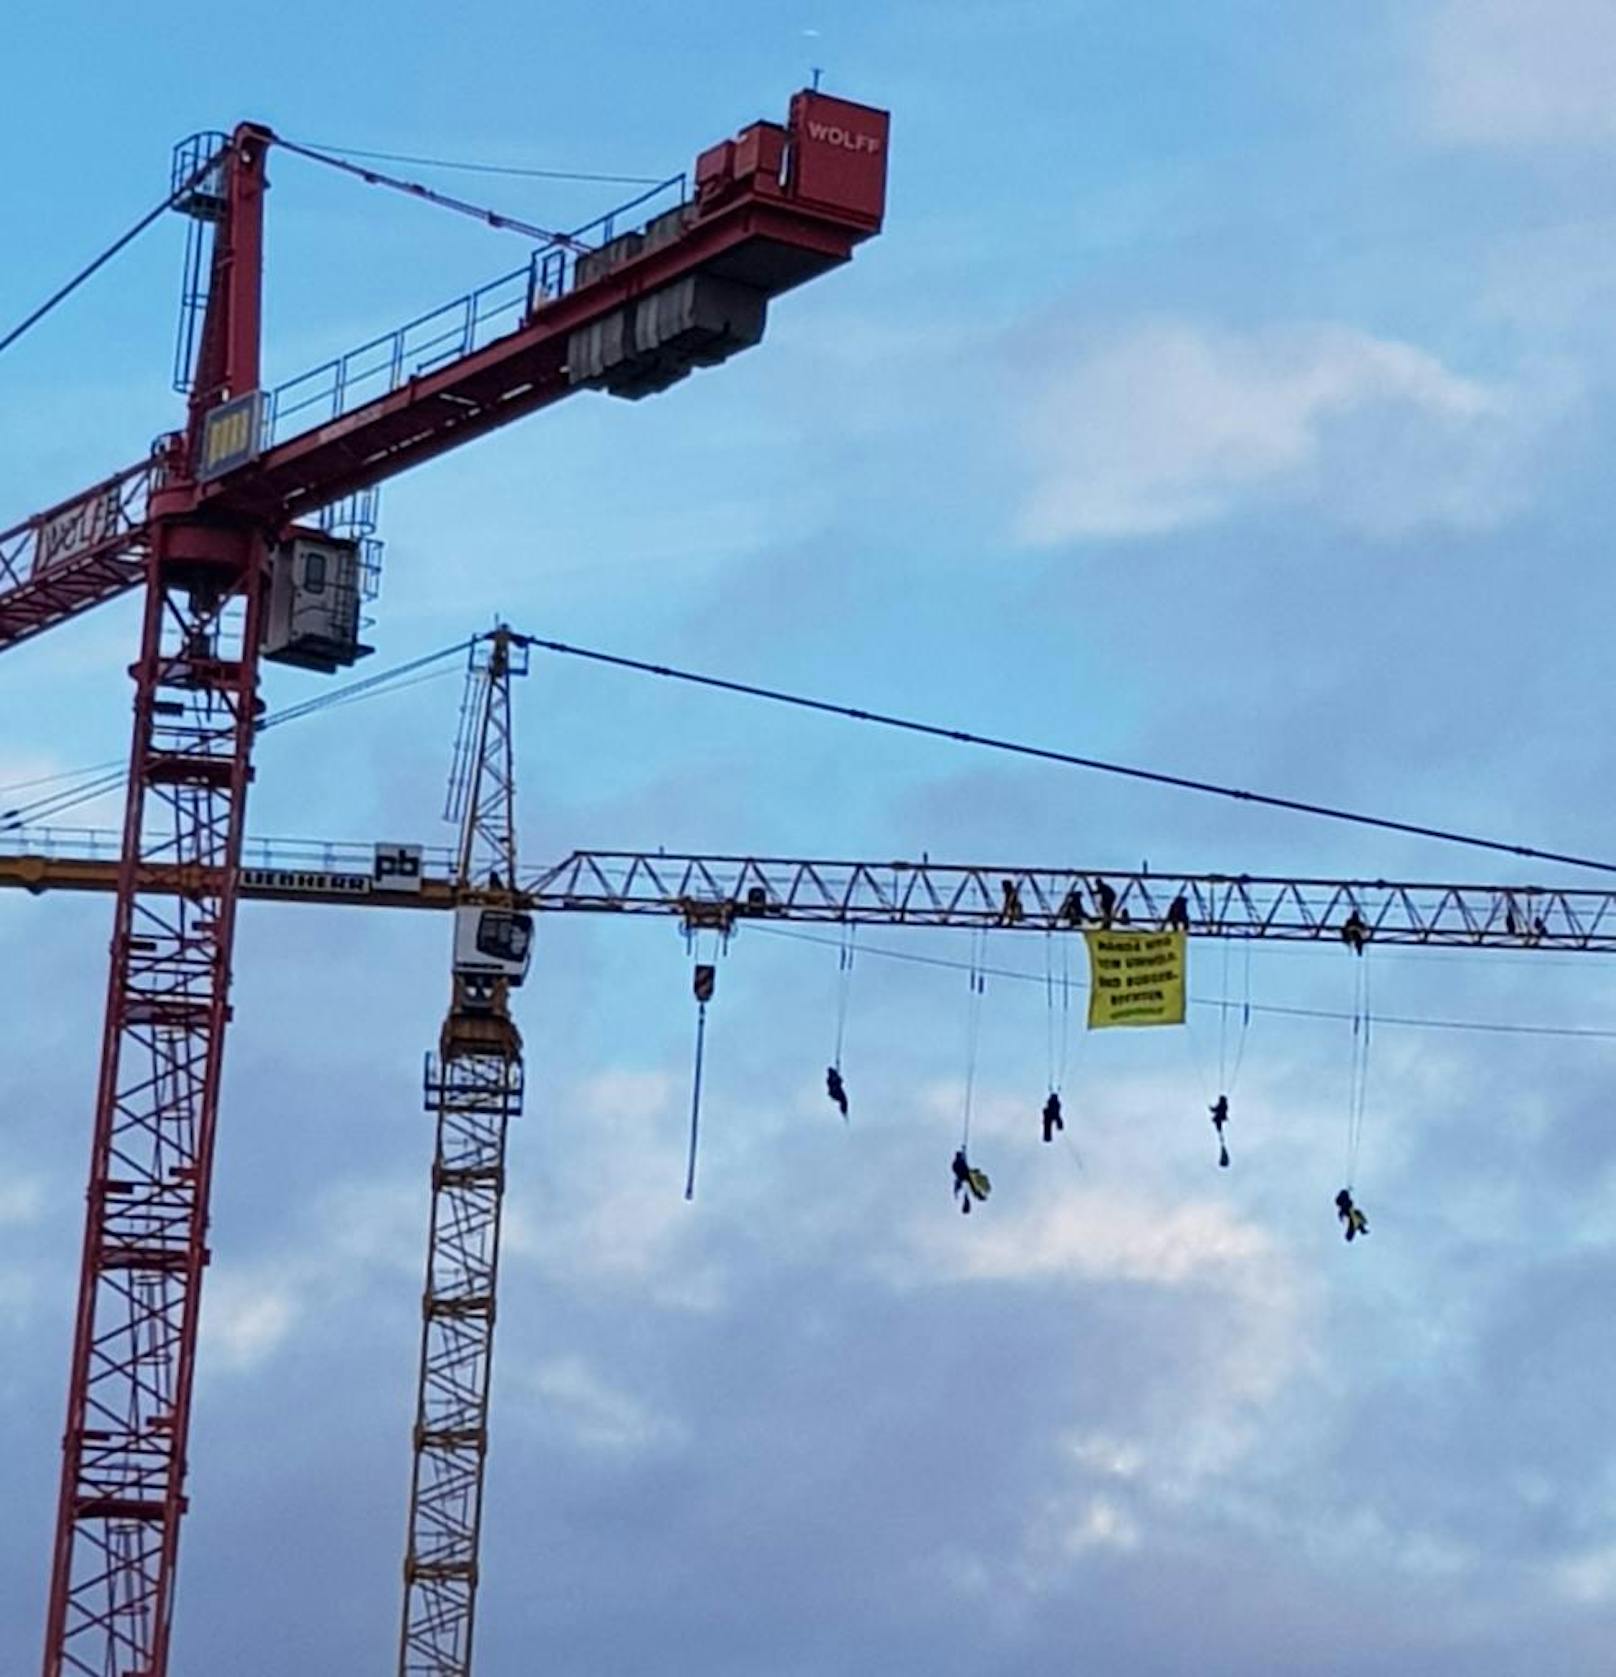 Um ihren Protest laut kundzutun, kletterten mehrere Greenpeace-Aktivisten am Donnerstagmorgen auf einen 50-Meter-hohen Baukran vor dem Wiener Parlament. Dann rollten sie ein Plakat aus. Text: Hände weg von Umwelt- und Bürgerrechten". Greenpeace fordert die Nationalratsabgeordneten von ÖVP und FPÖ auf, den Antrag gänzlich zurückzunehmen.